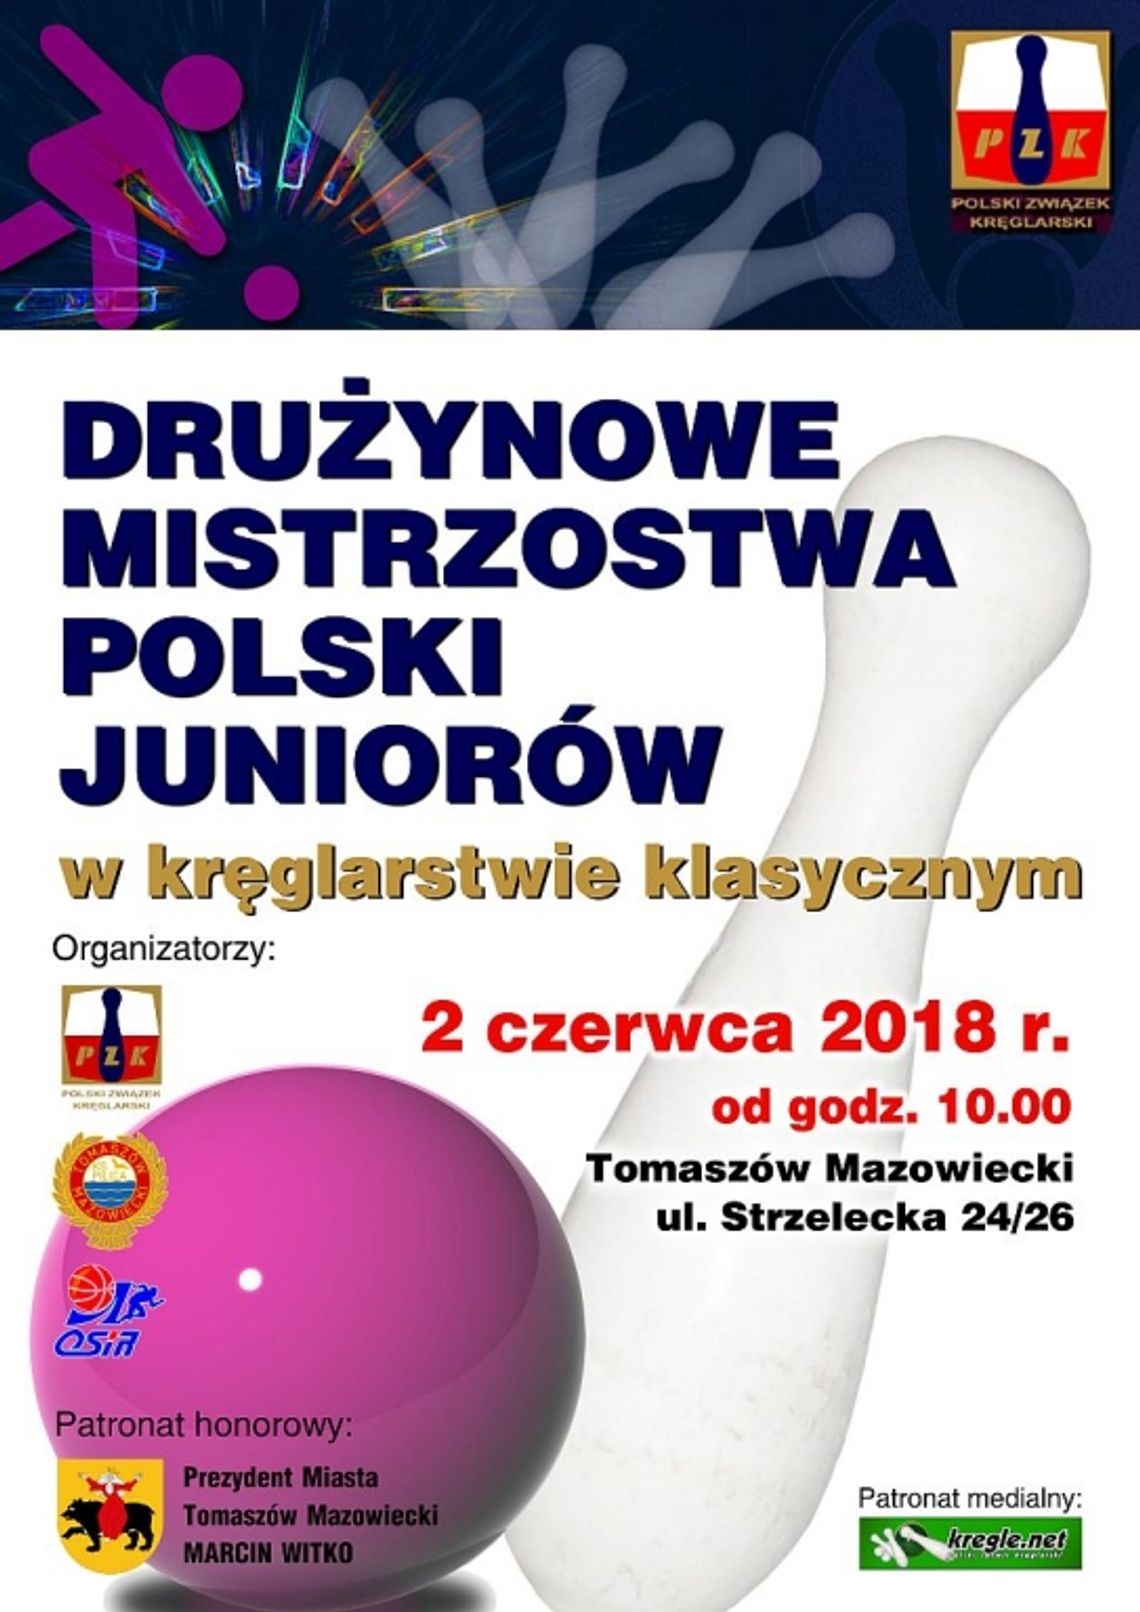 Mistrzostwa Polski Juniorów w kręglarstwie klasycznym już w tę sobotę